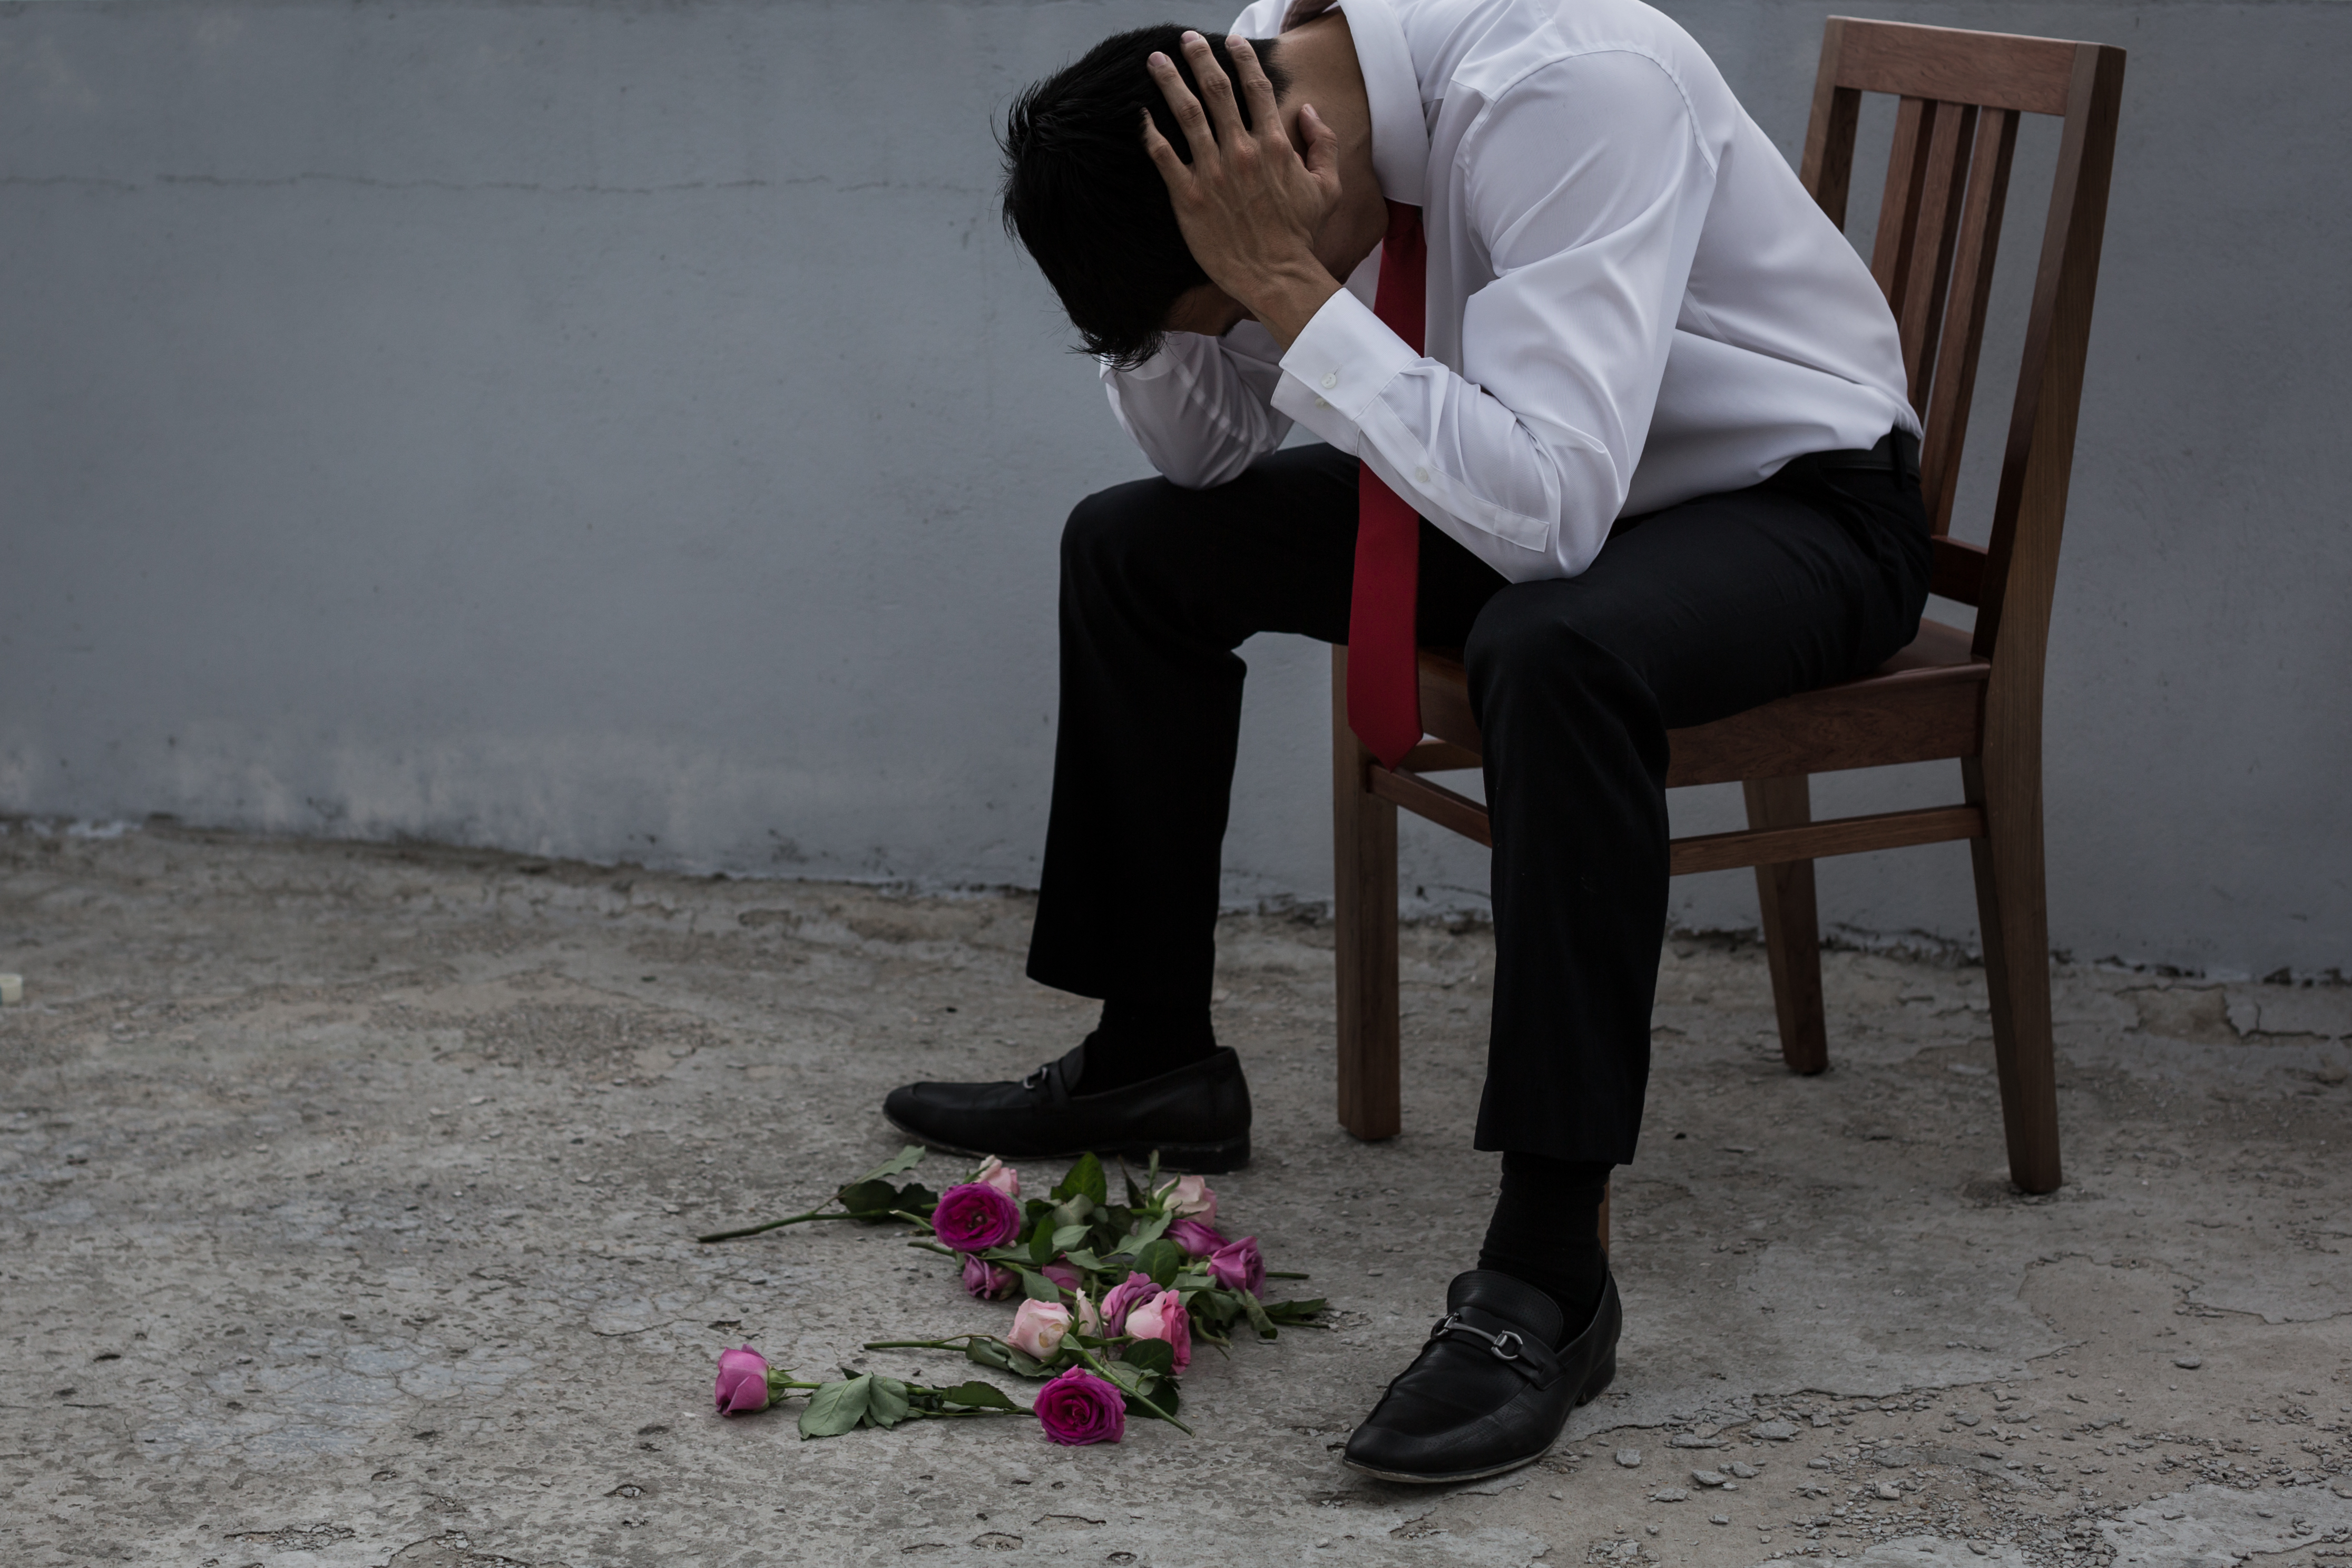 Un hombre descorazonado y con el corazón roto tras ser rechazado | Foto: Shutterstock